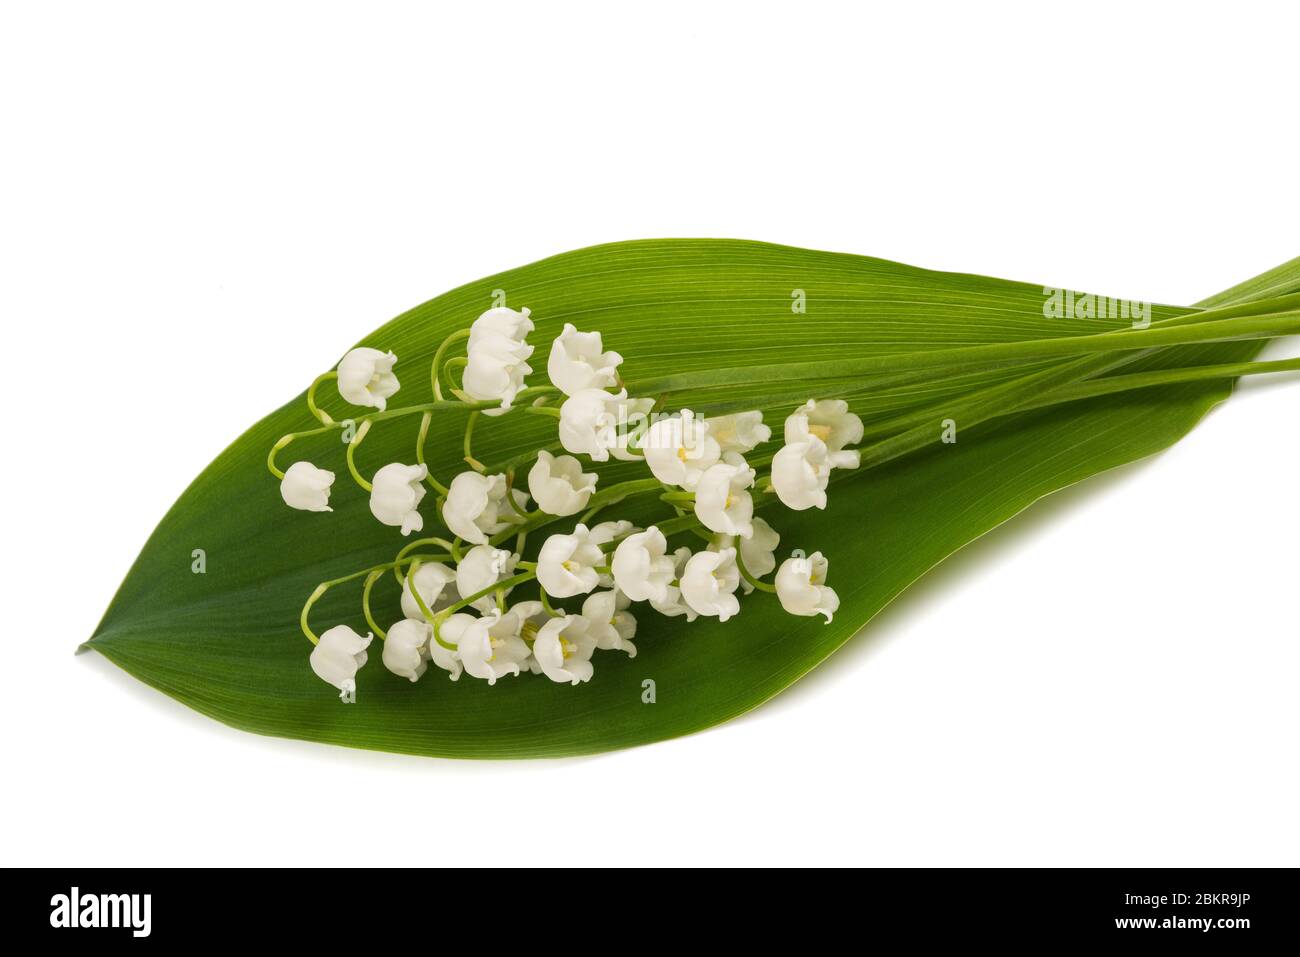 Lily della valle isolato su sfondo bianco Foto Stock